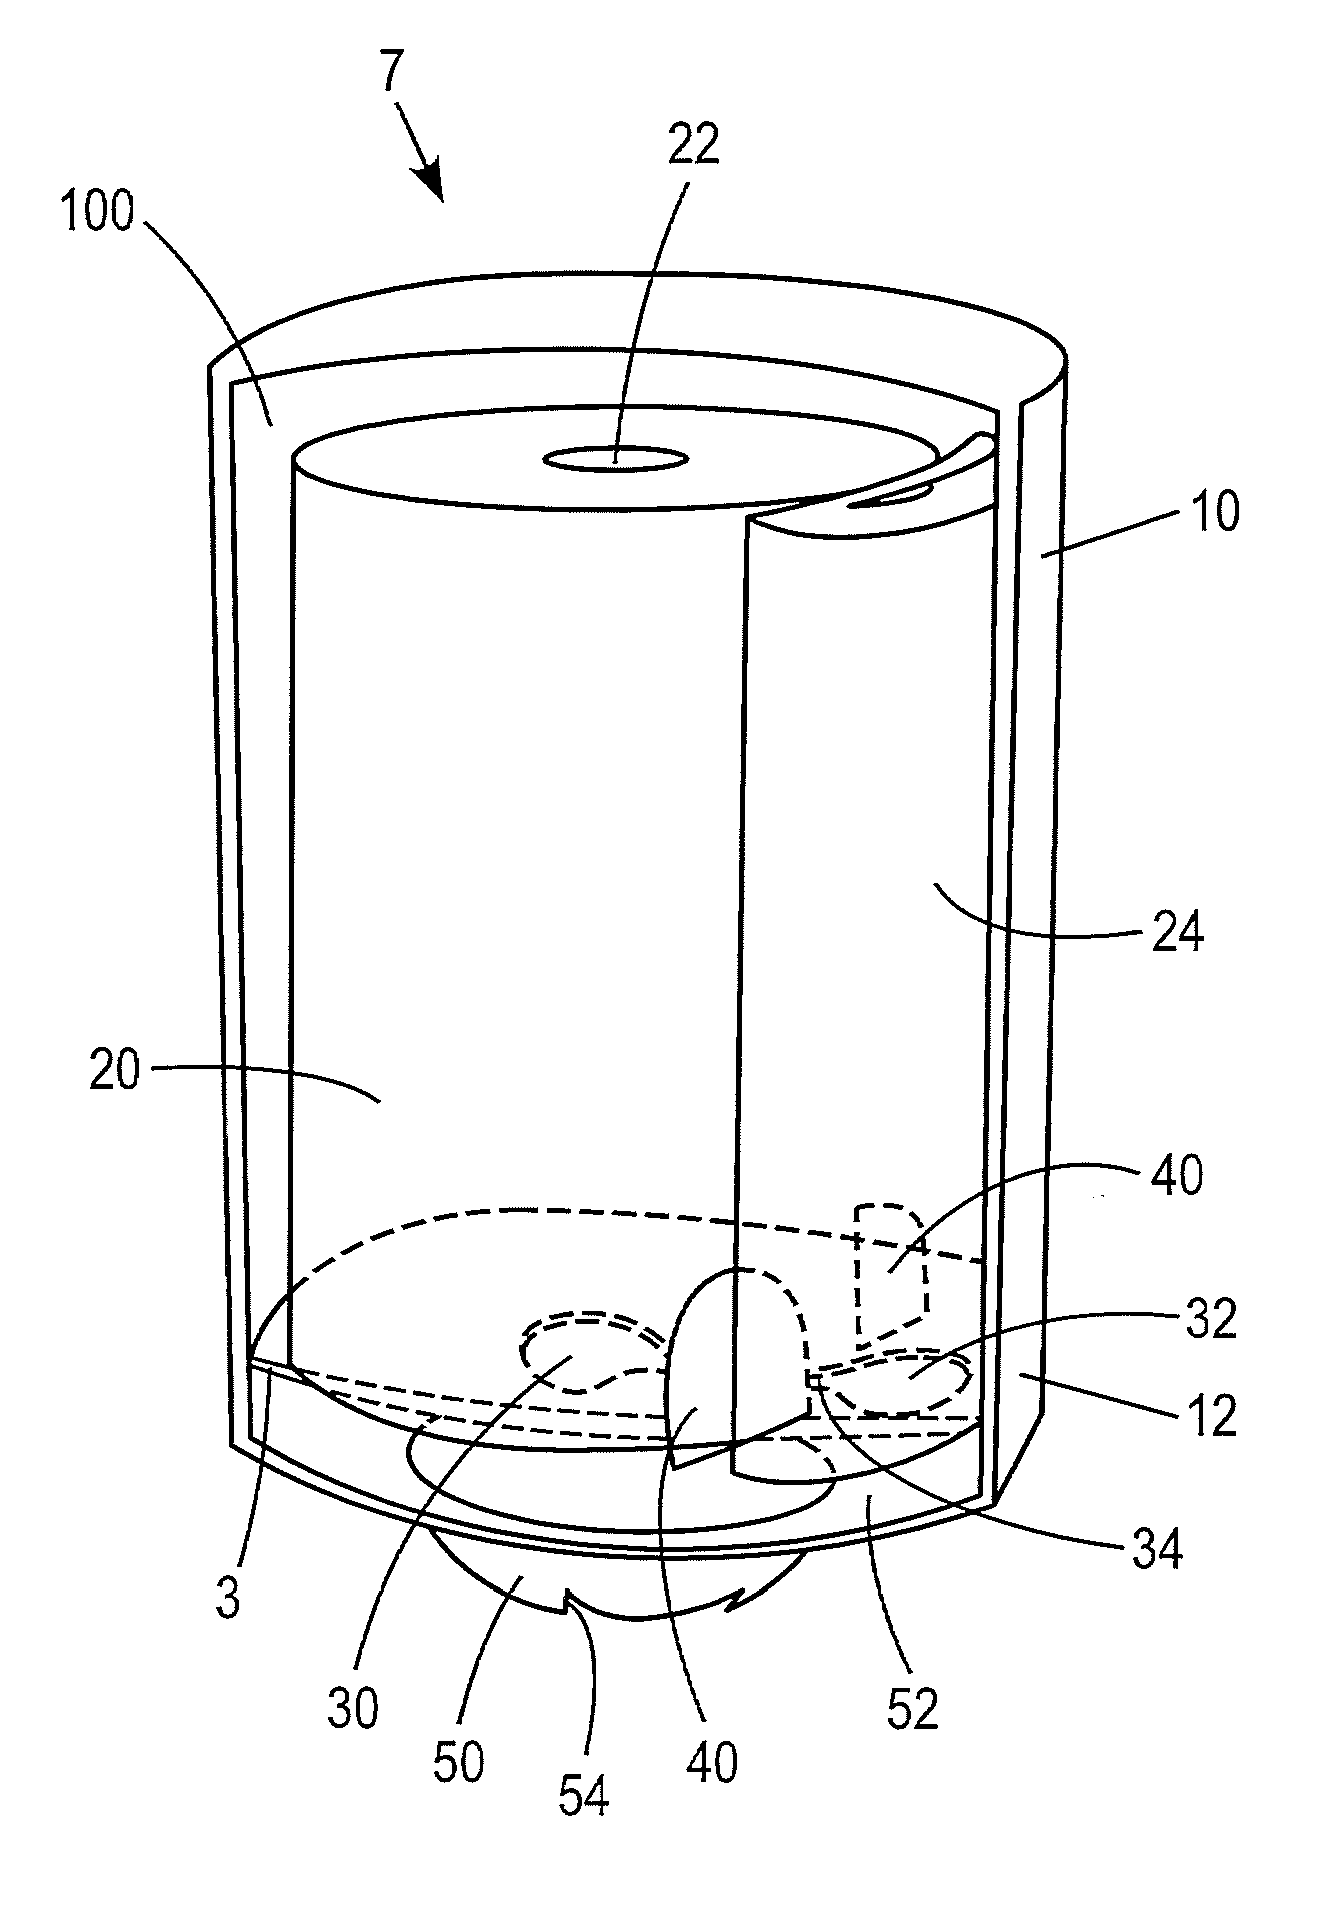 Dispenser for dispensing paper from center-feed tissue paper rolls